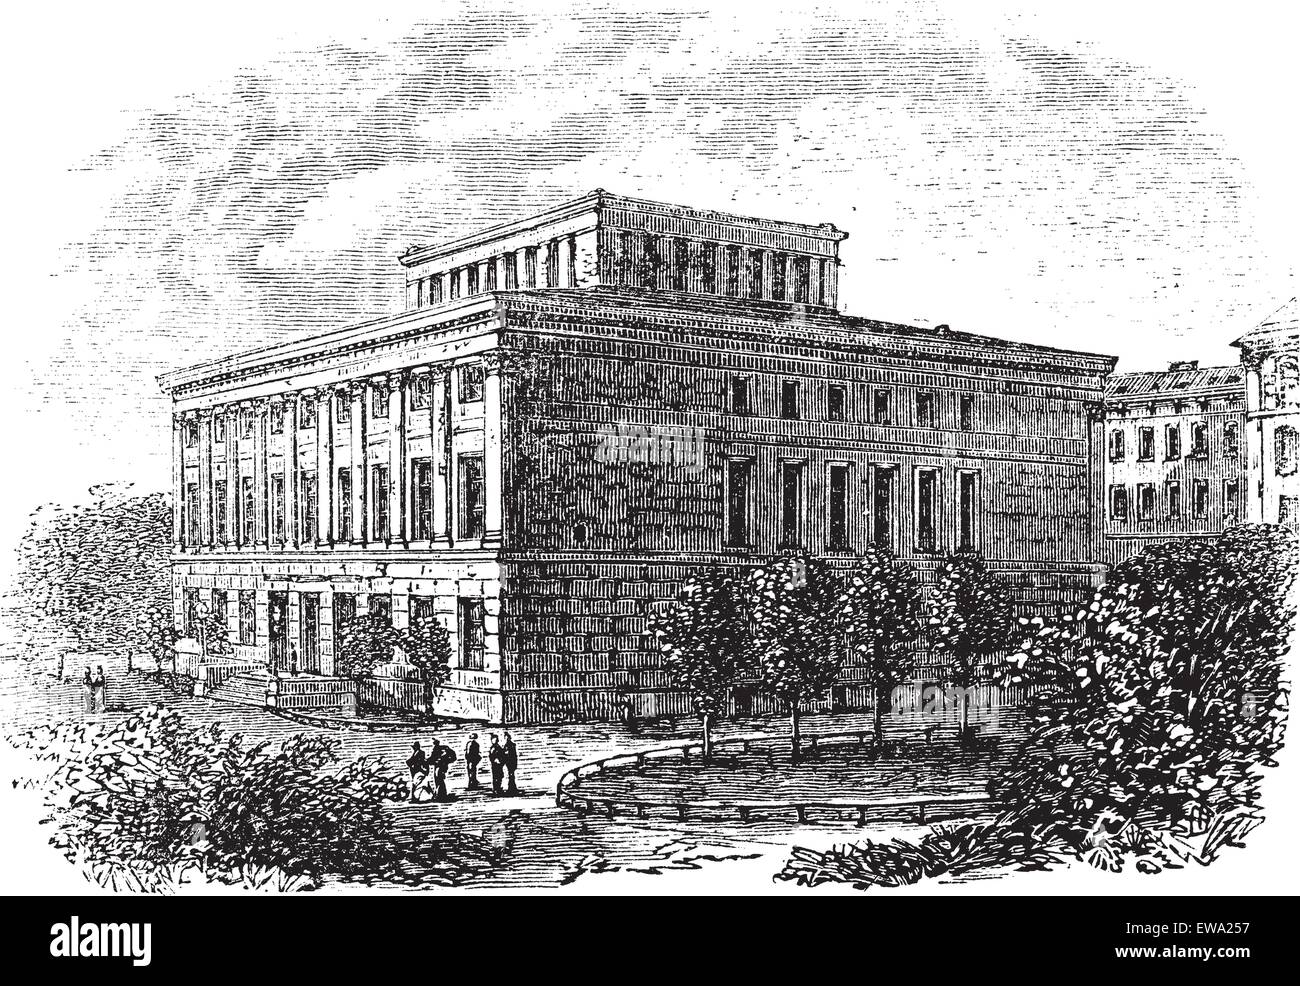 Università di Halle-Wittenberg vintage incisione. Vecchie illustrazioni incise dell università di Halle-Wittenberg,1800s Illustrazione Vettoriale